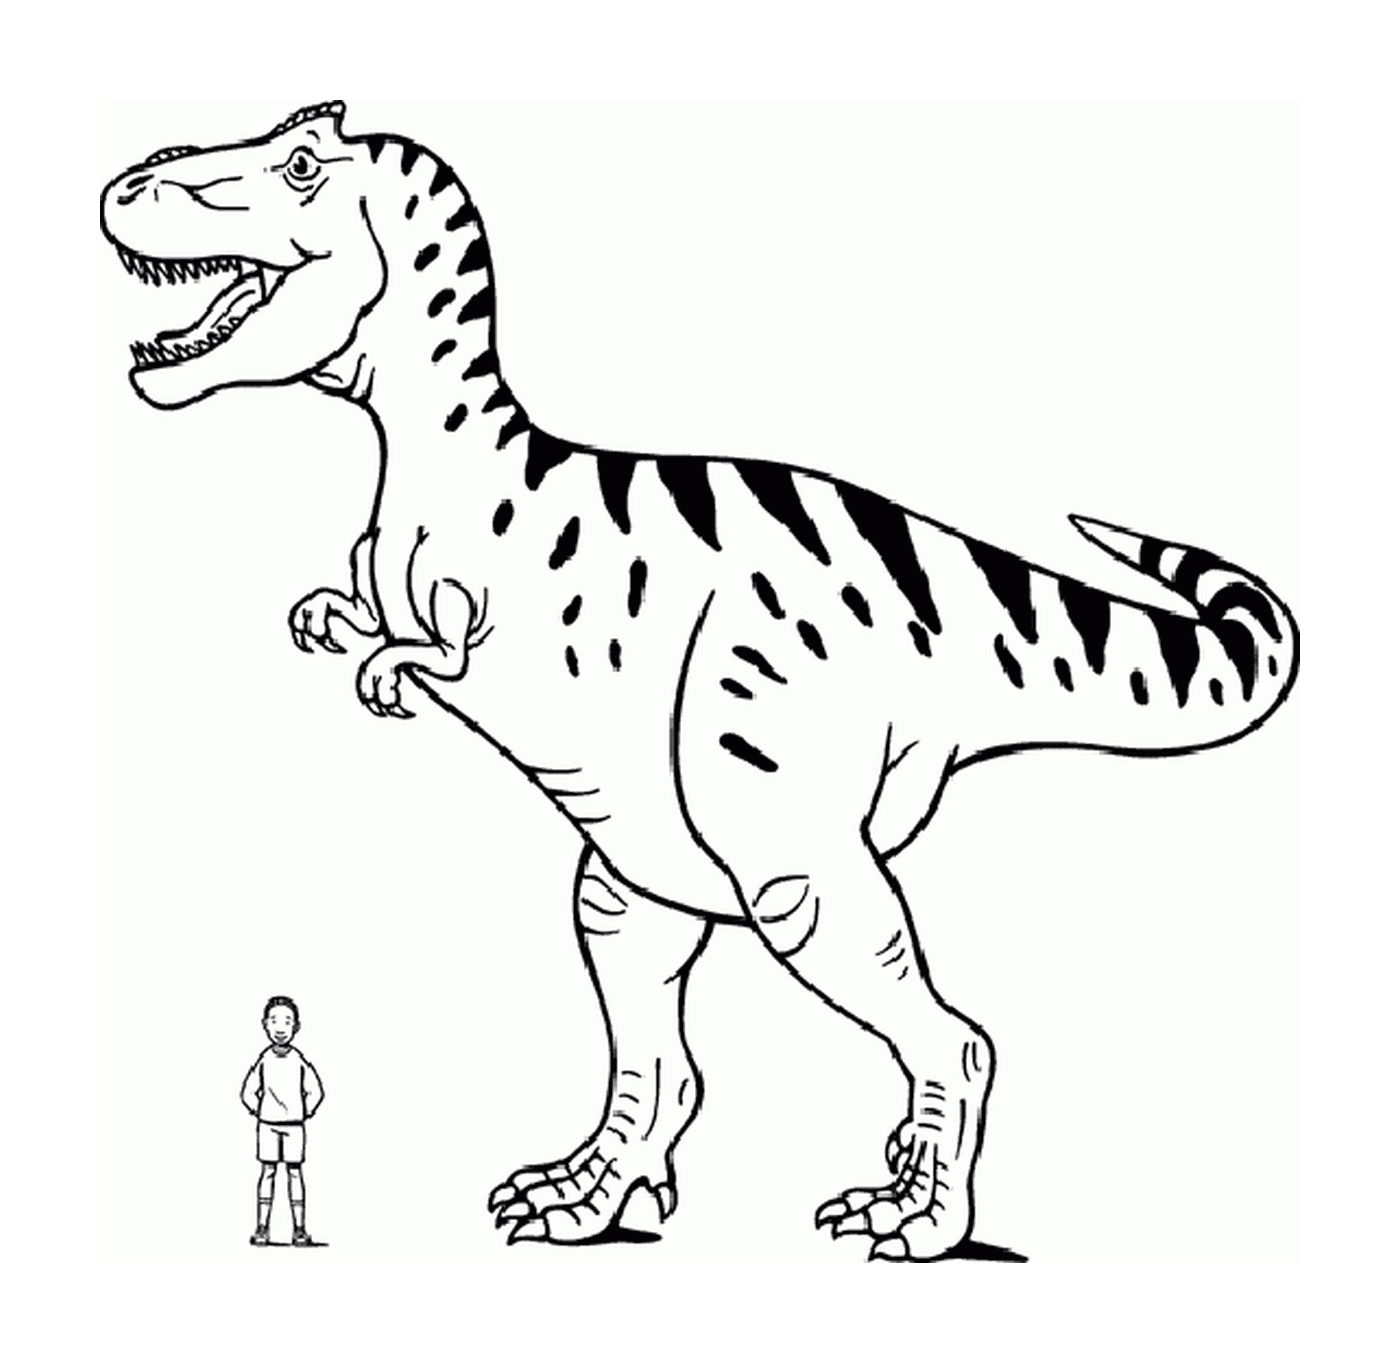  Un tirannosauro in piedi accanto ad una persona 